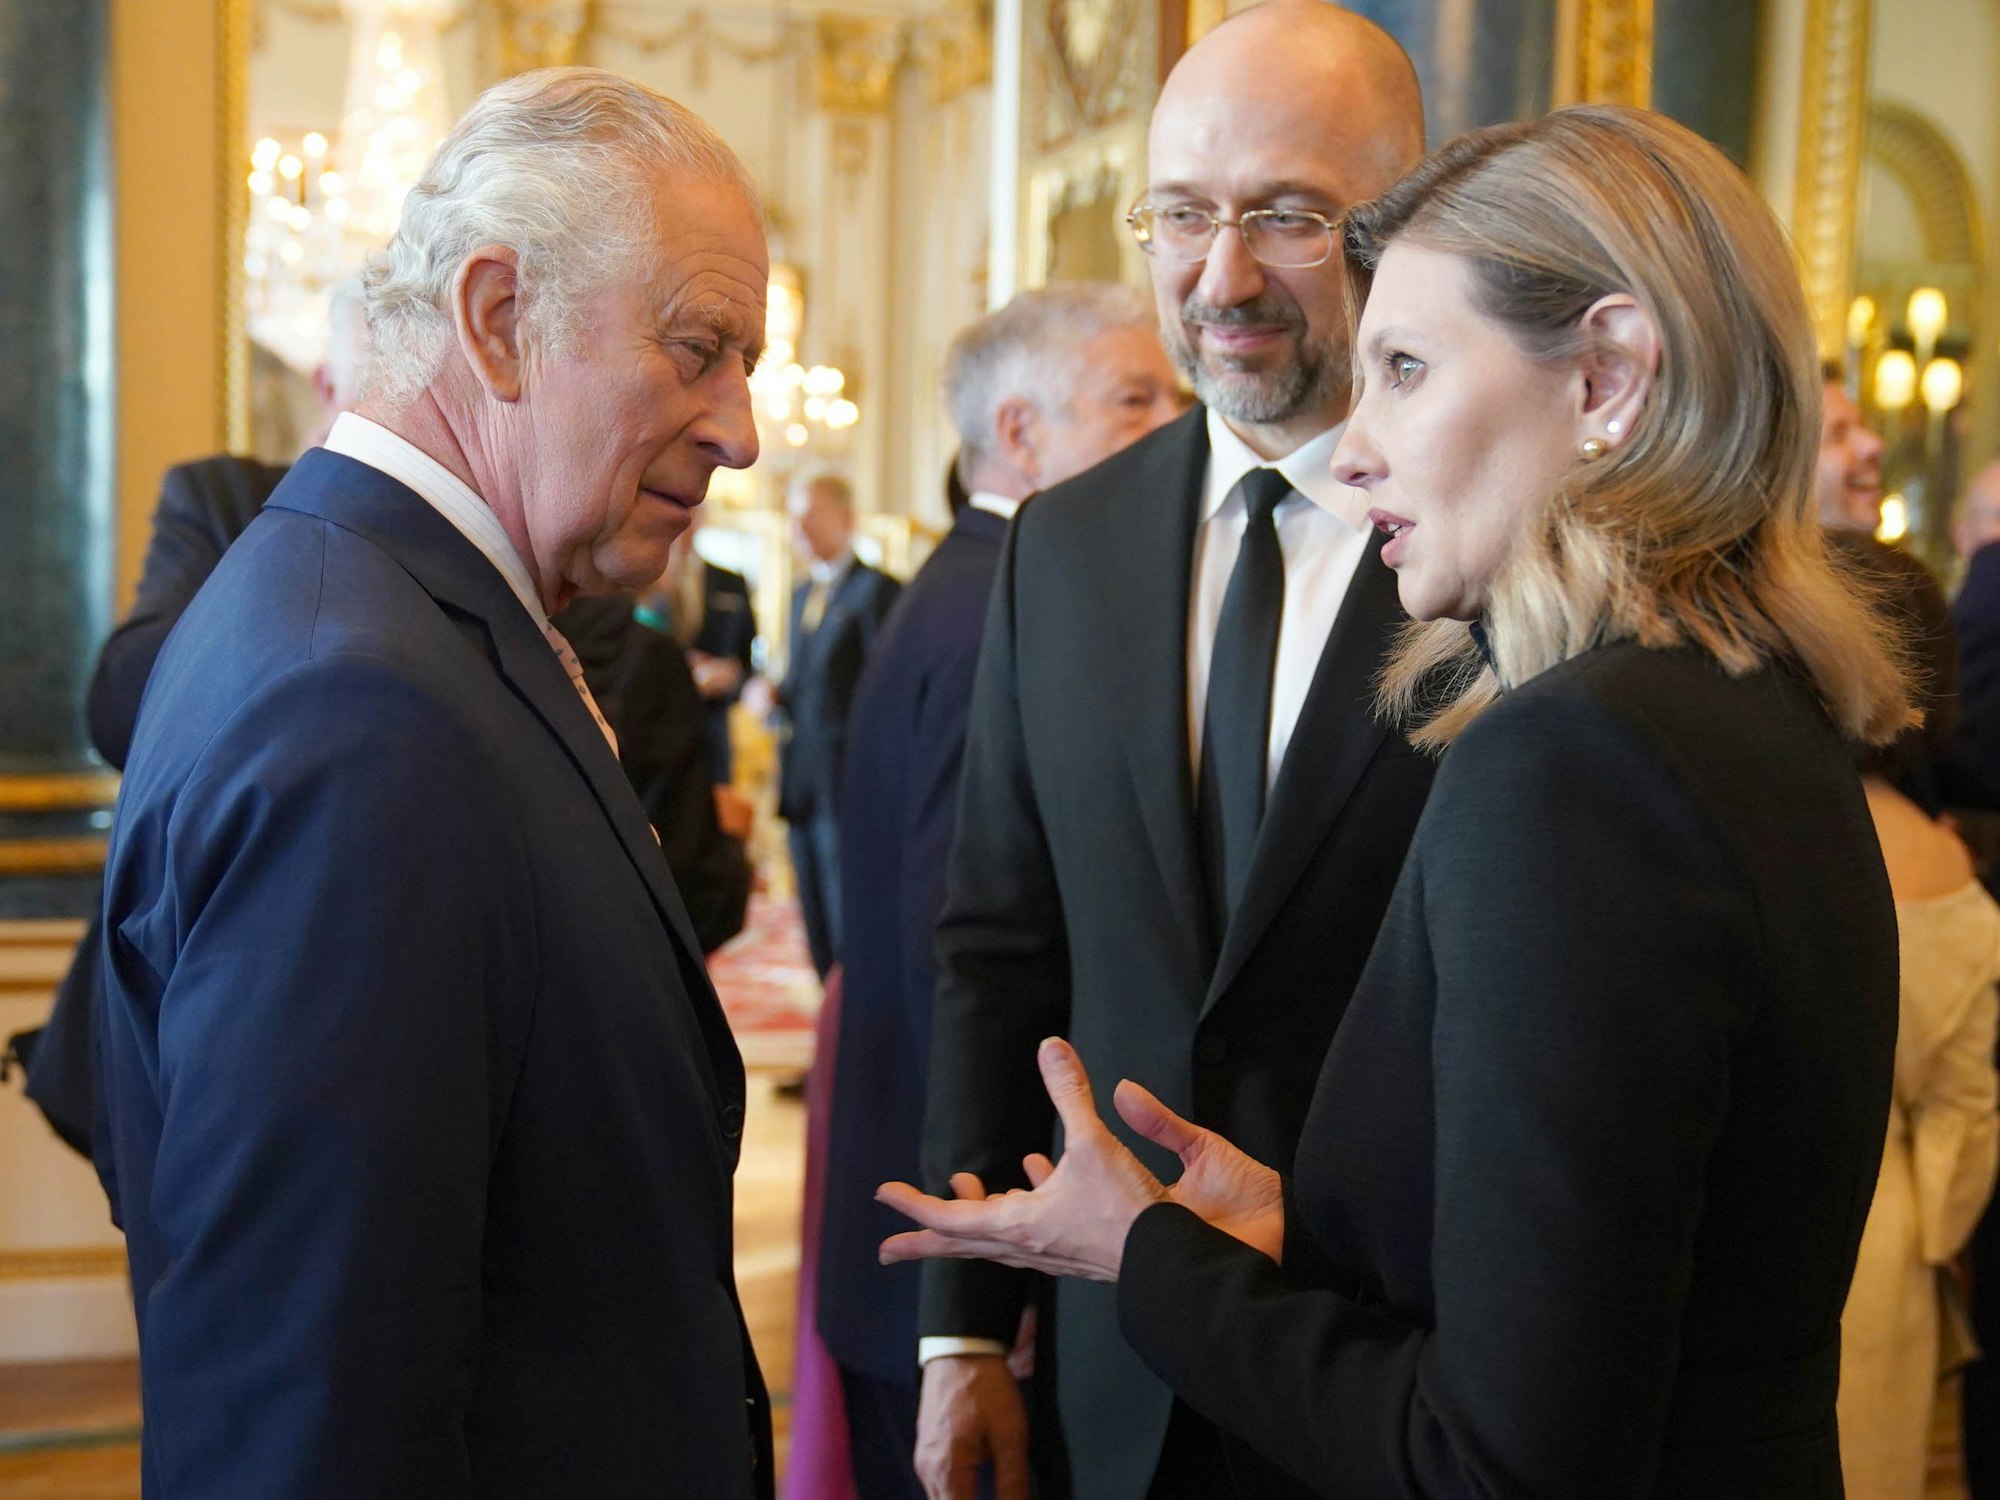 König Charles III. (l) von Großbritannien spricht mit Olena Zelenska (r), First Lady der Ukraine, und Denys Schmyhal, Ministerpräsident der Ukraine, während eines Empfangs im Buckingham Palace für ausländische Gäste, die an seiner Krönung teilnehmen.